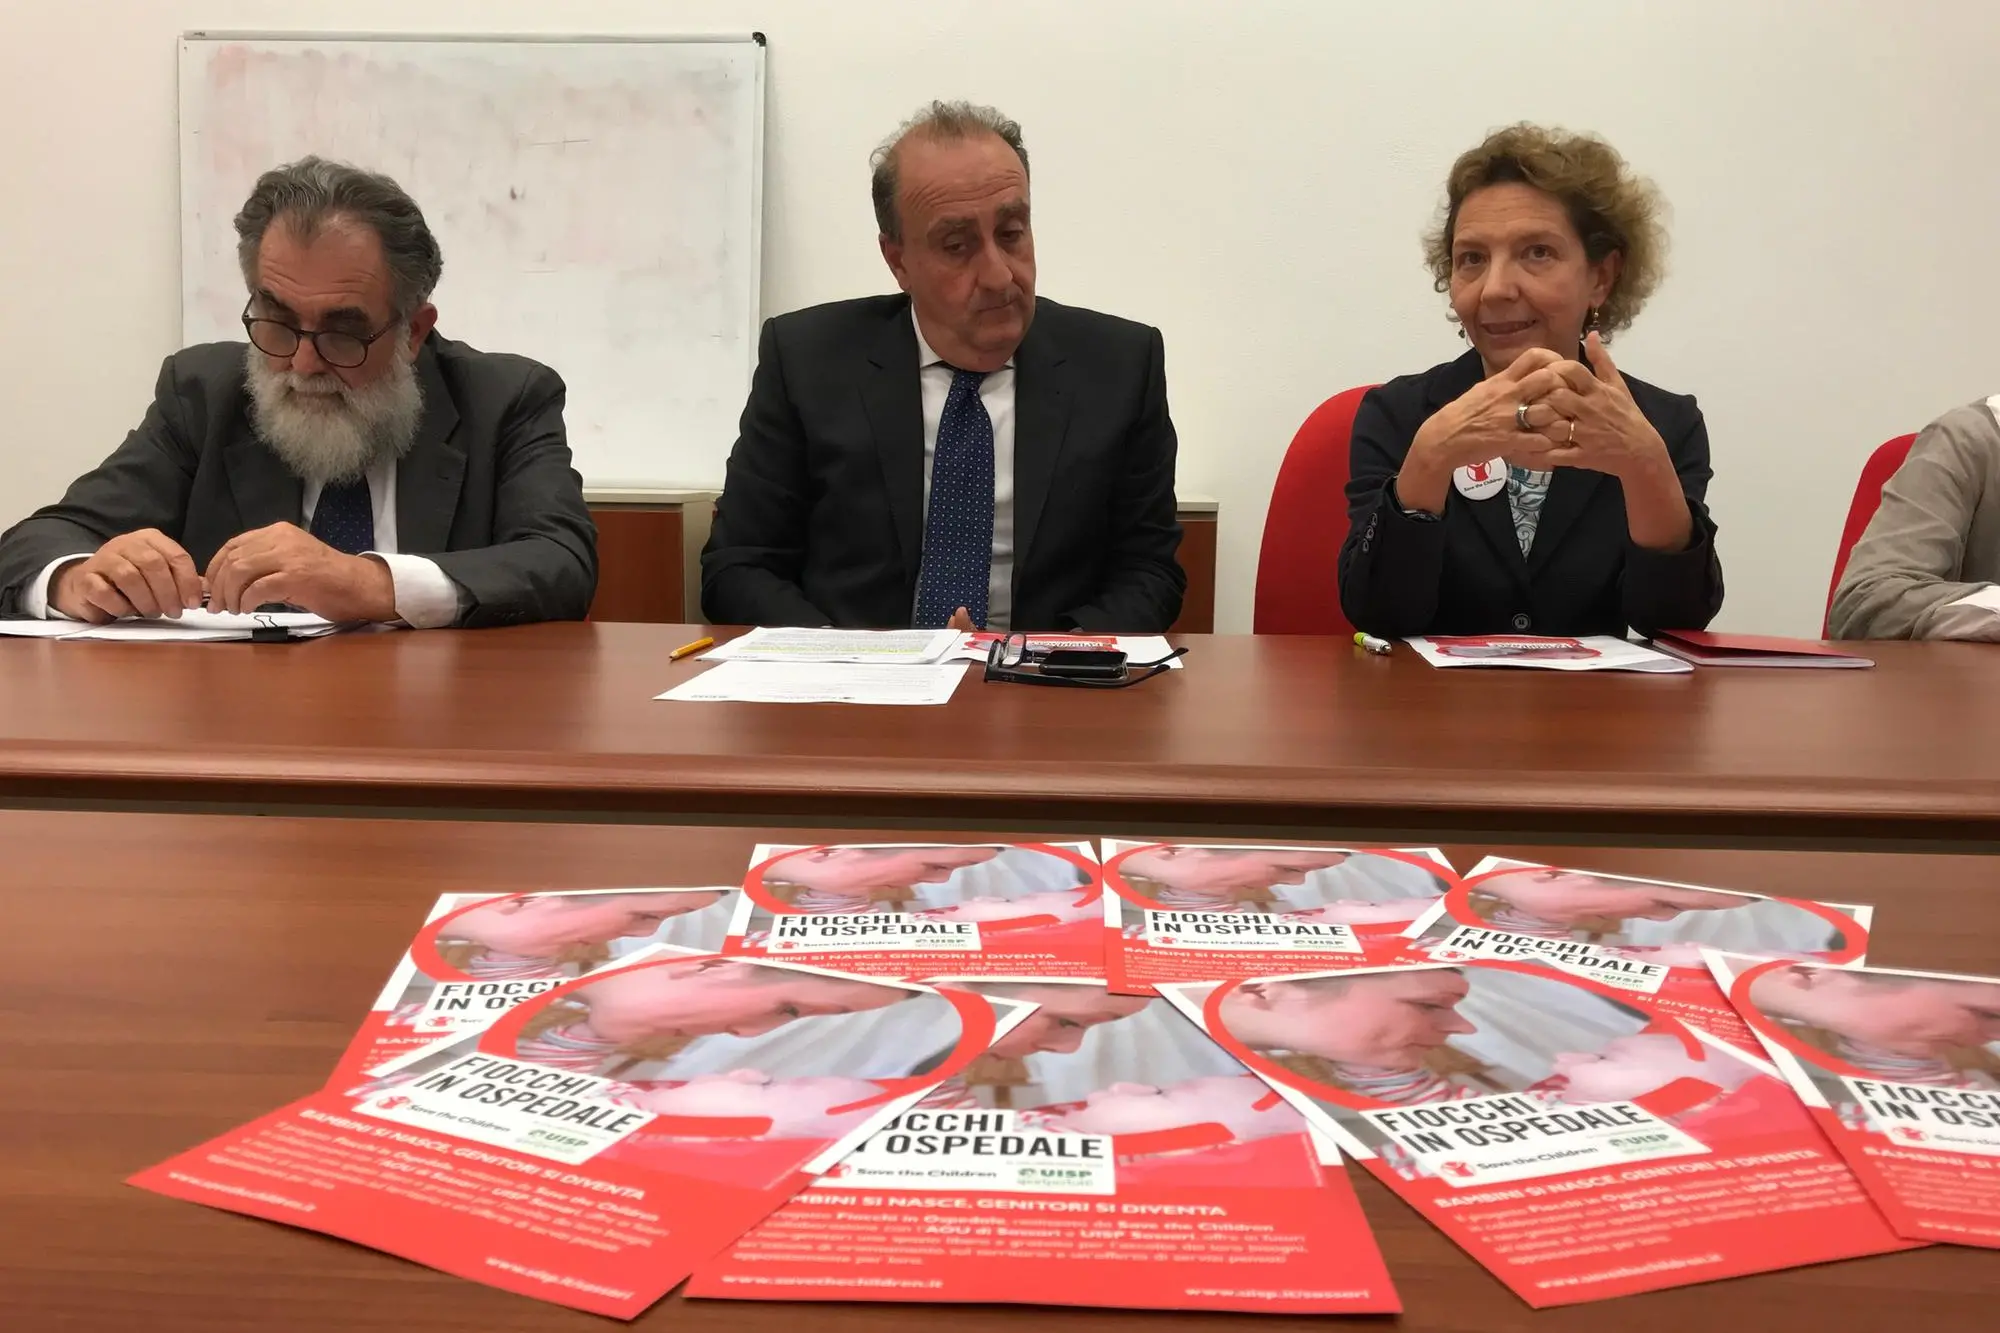 La presentazione di Fiocchi in ospedale a Sassari nel 2021 (foto L'Unione Sarda - Gloria Calvi)